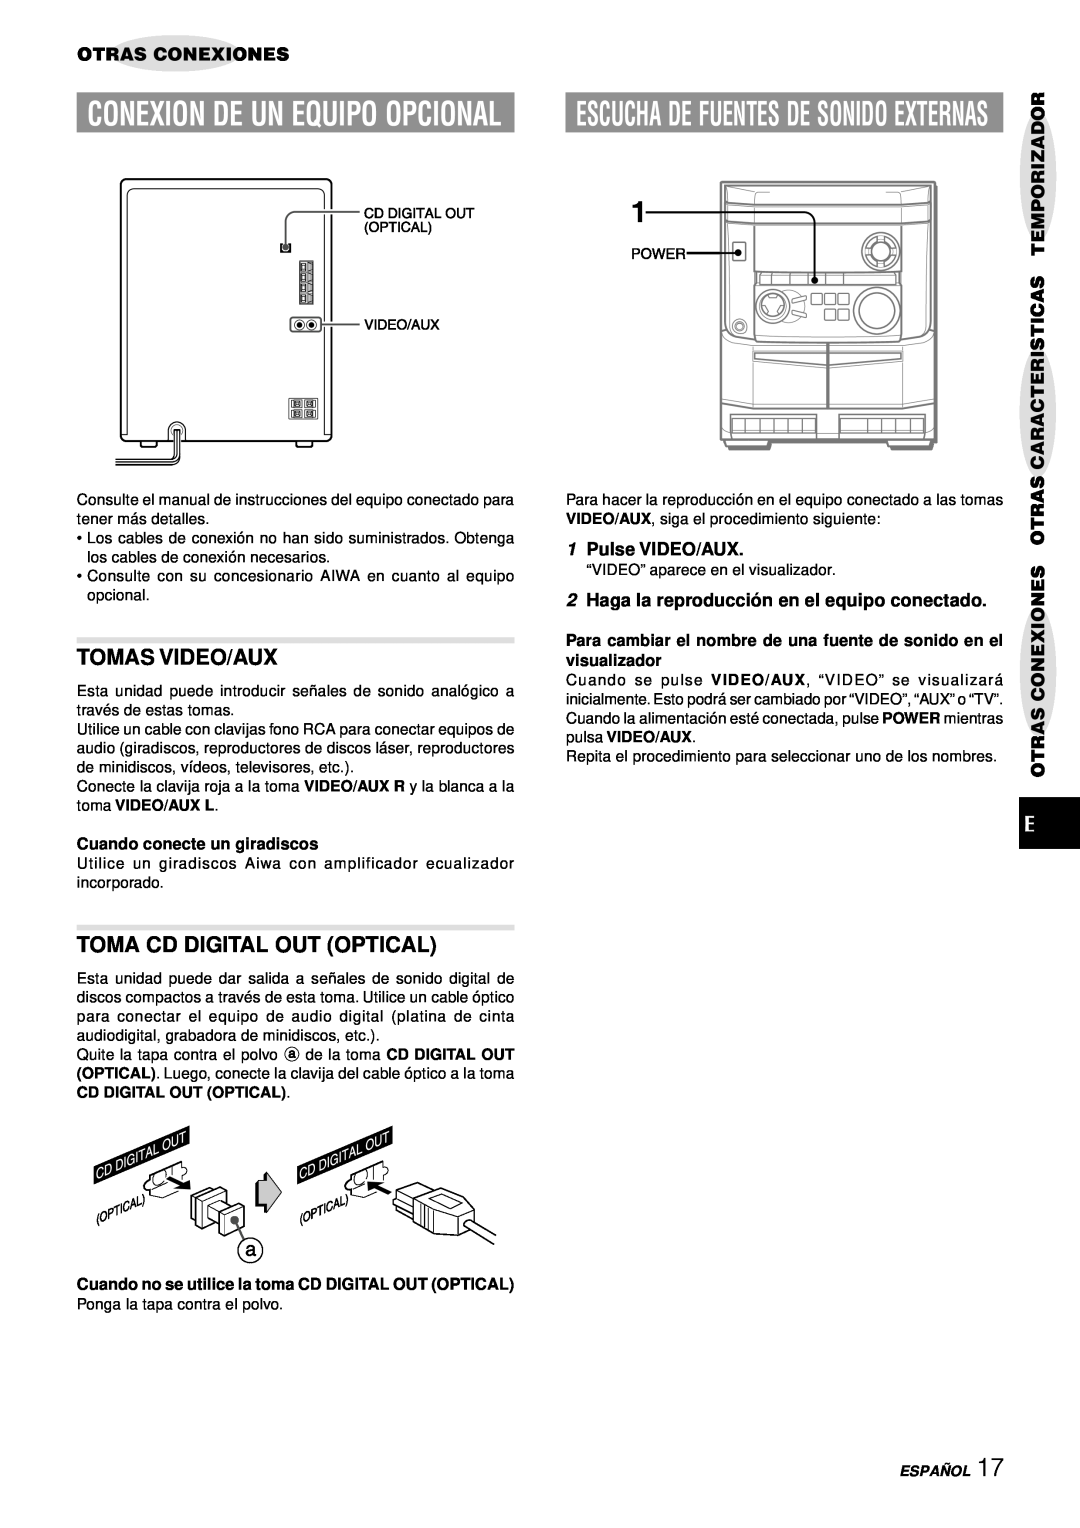 Aiwa NSX-AJ14 Conexion De Un Equipo Opcional, Tomas Video/Aux, Toma Cd Digital Out Optical, Otras Conexiones 